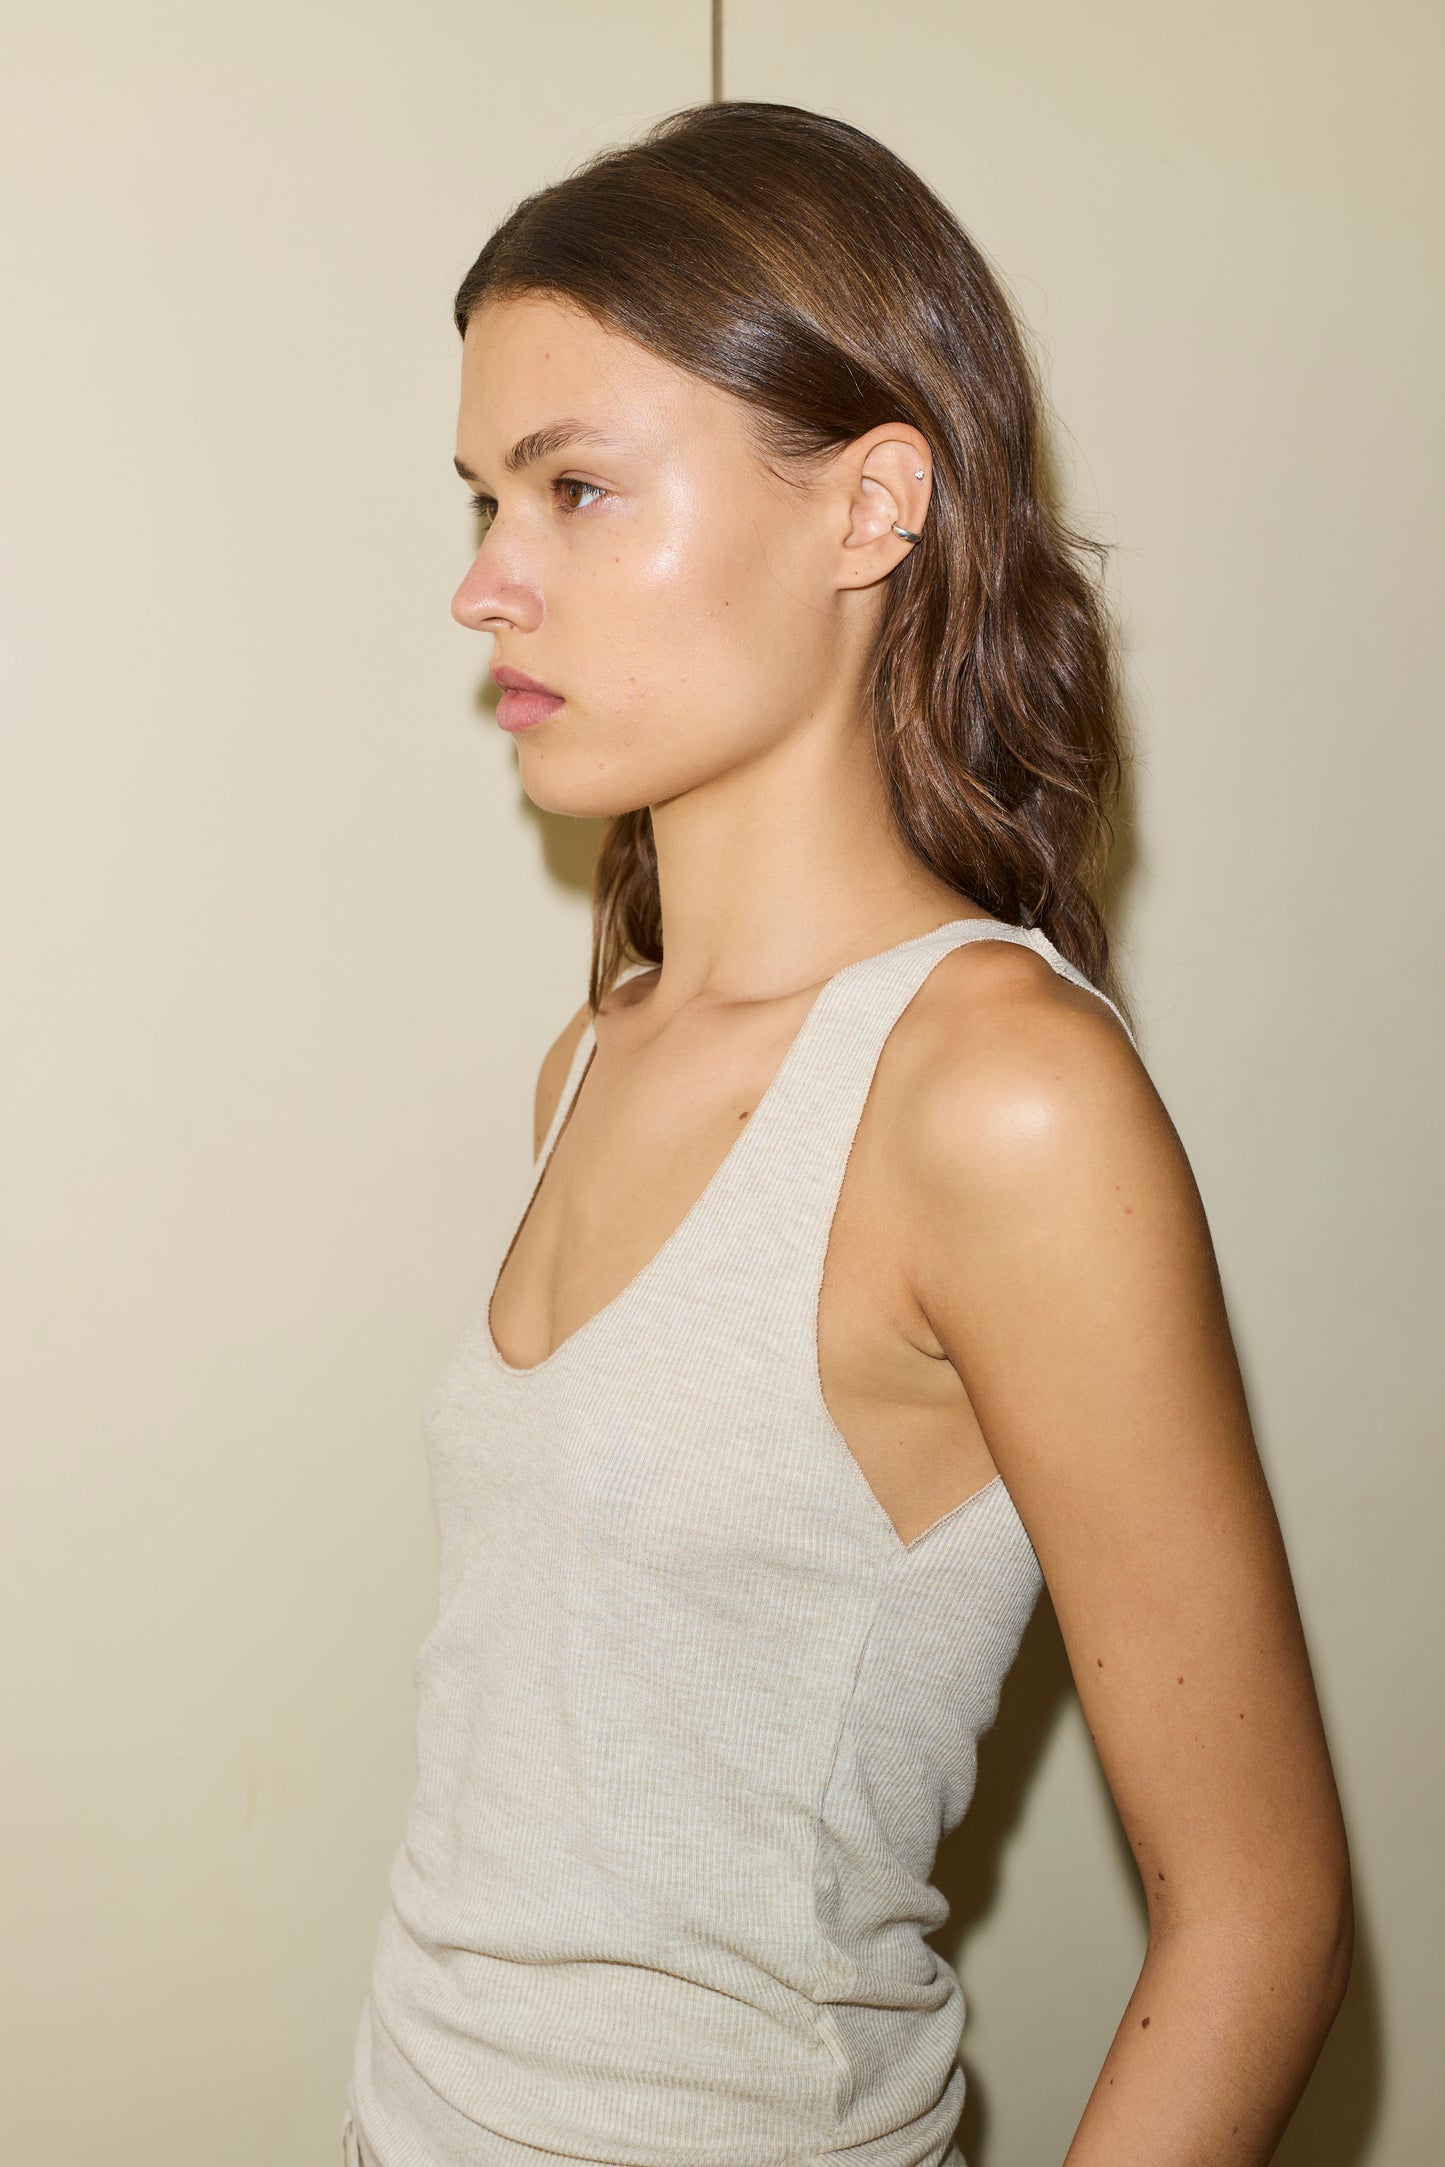 Female model wearing The Knit Tank - Oat by Deiji Studios against plain background